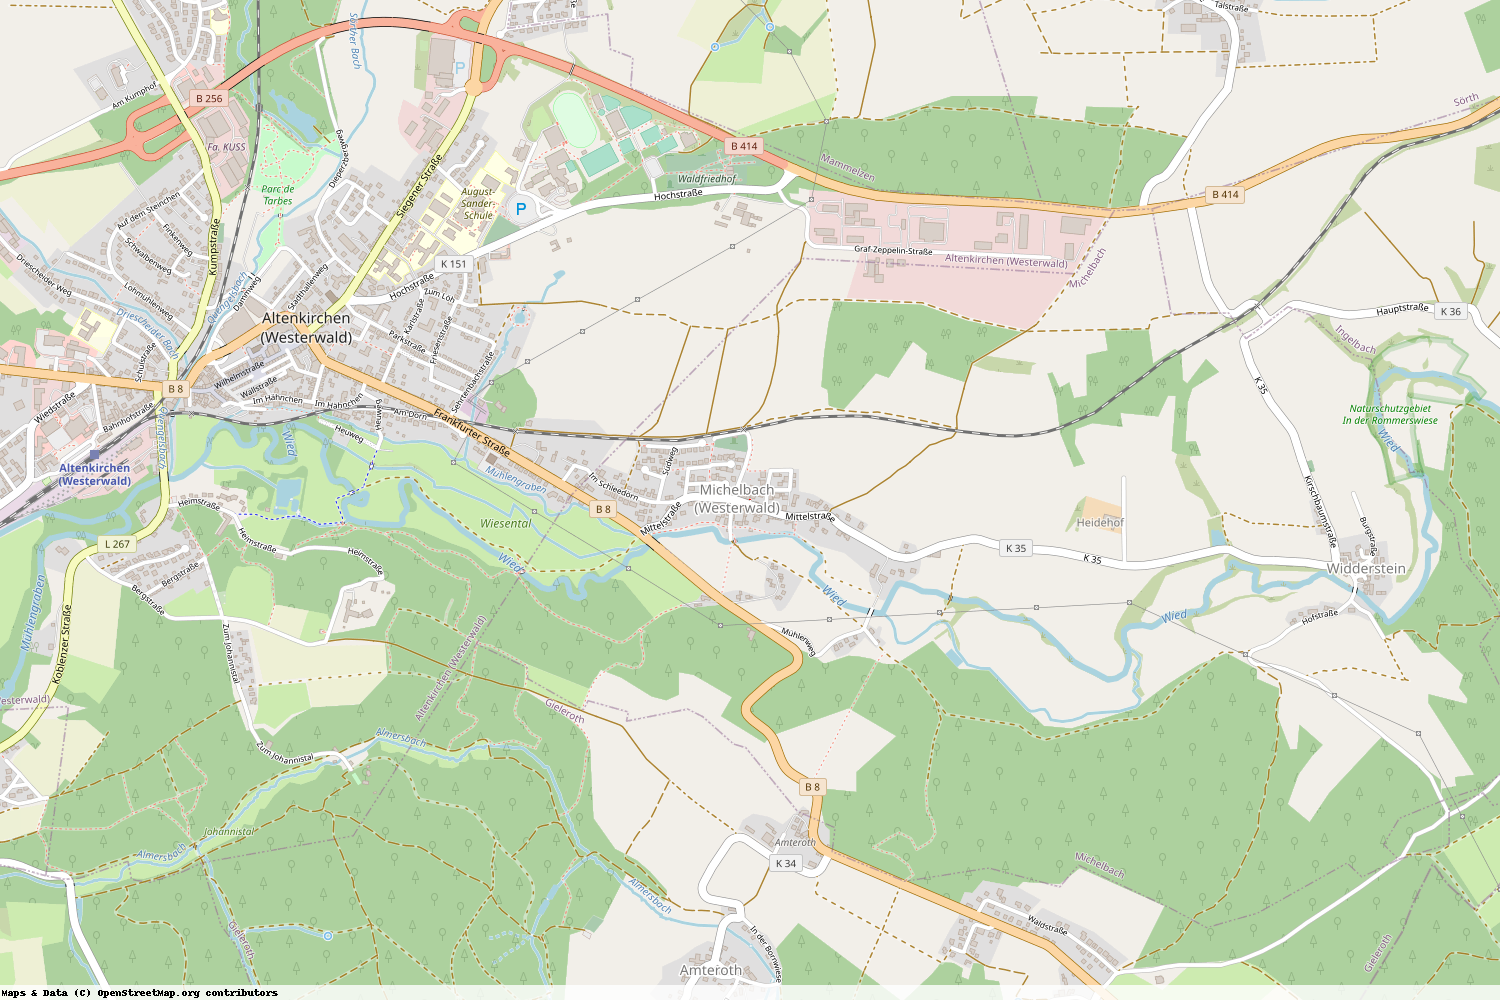 Ist gerade Stromausfall in Rheinland-Pfalz - Altenkirchen (Westerwald) - Michelbach (Westerwald)?